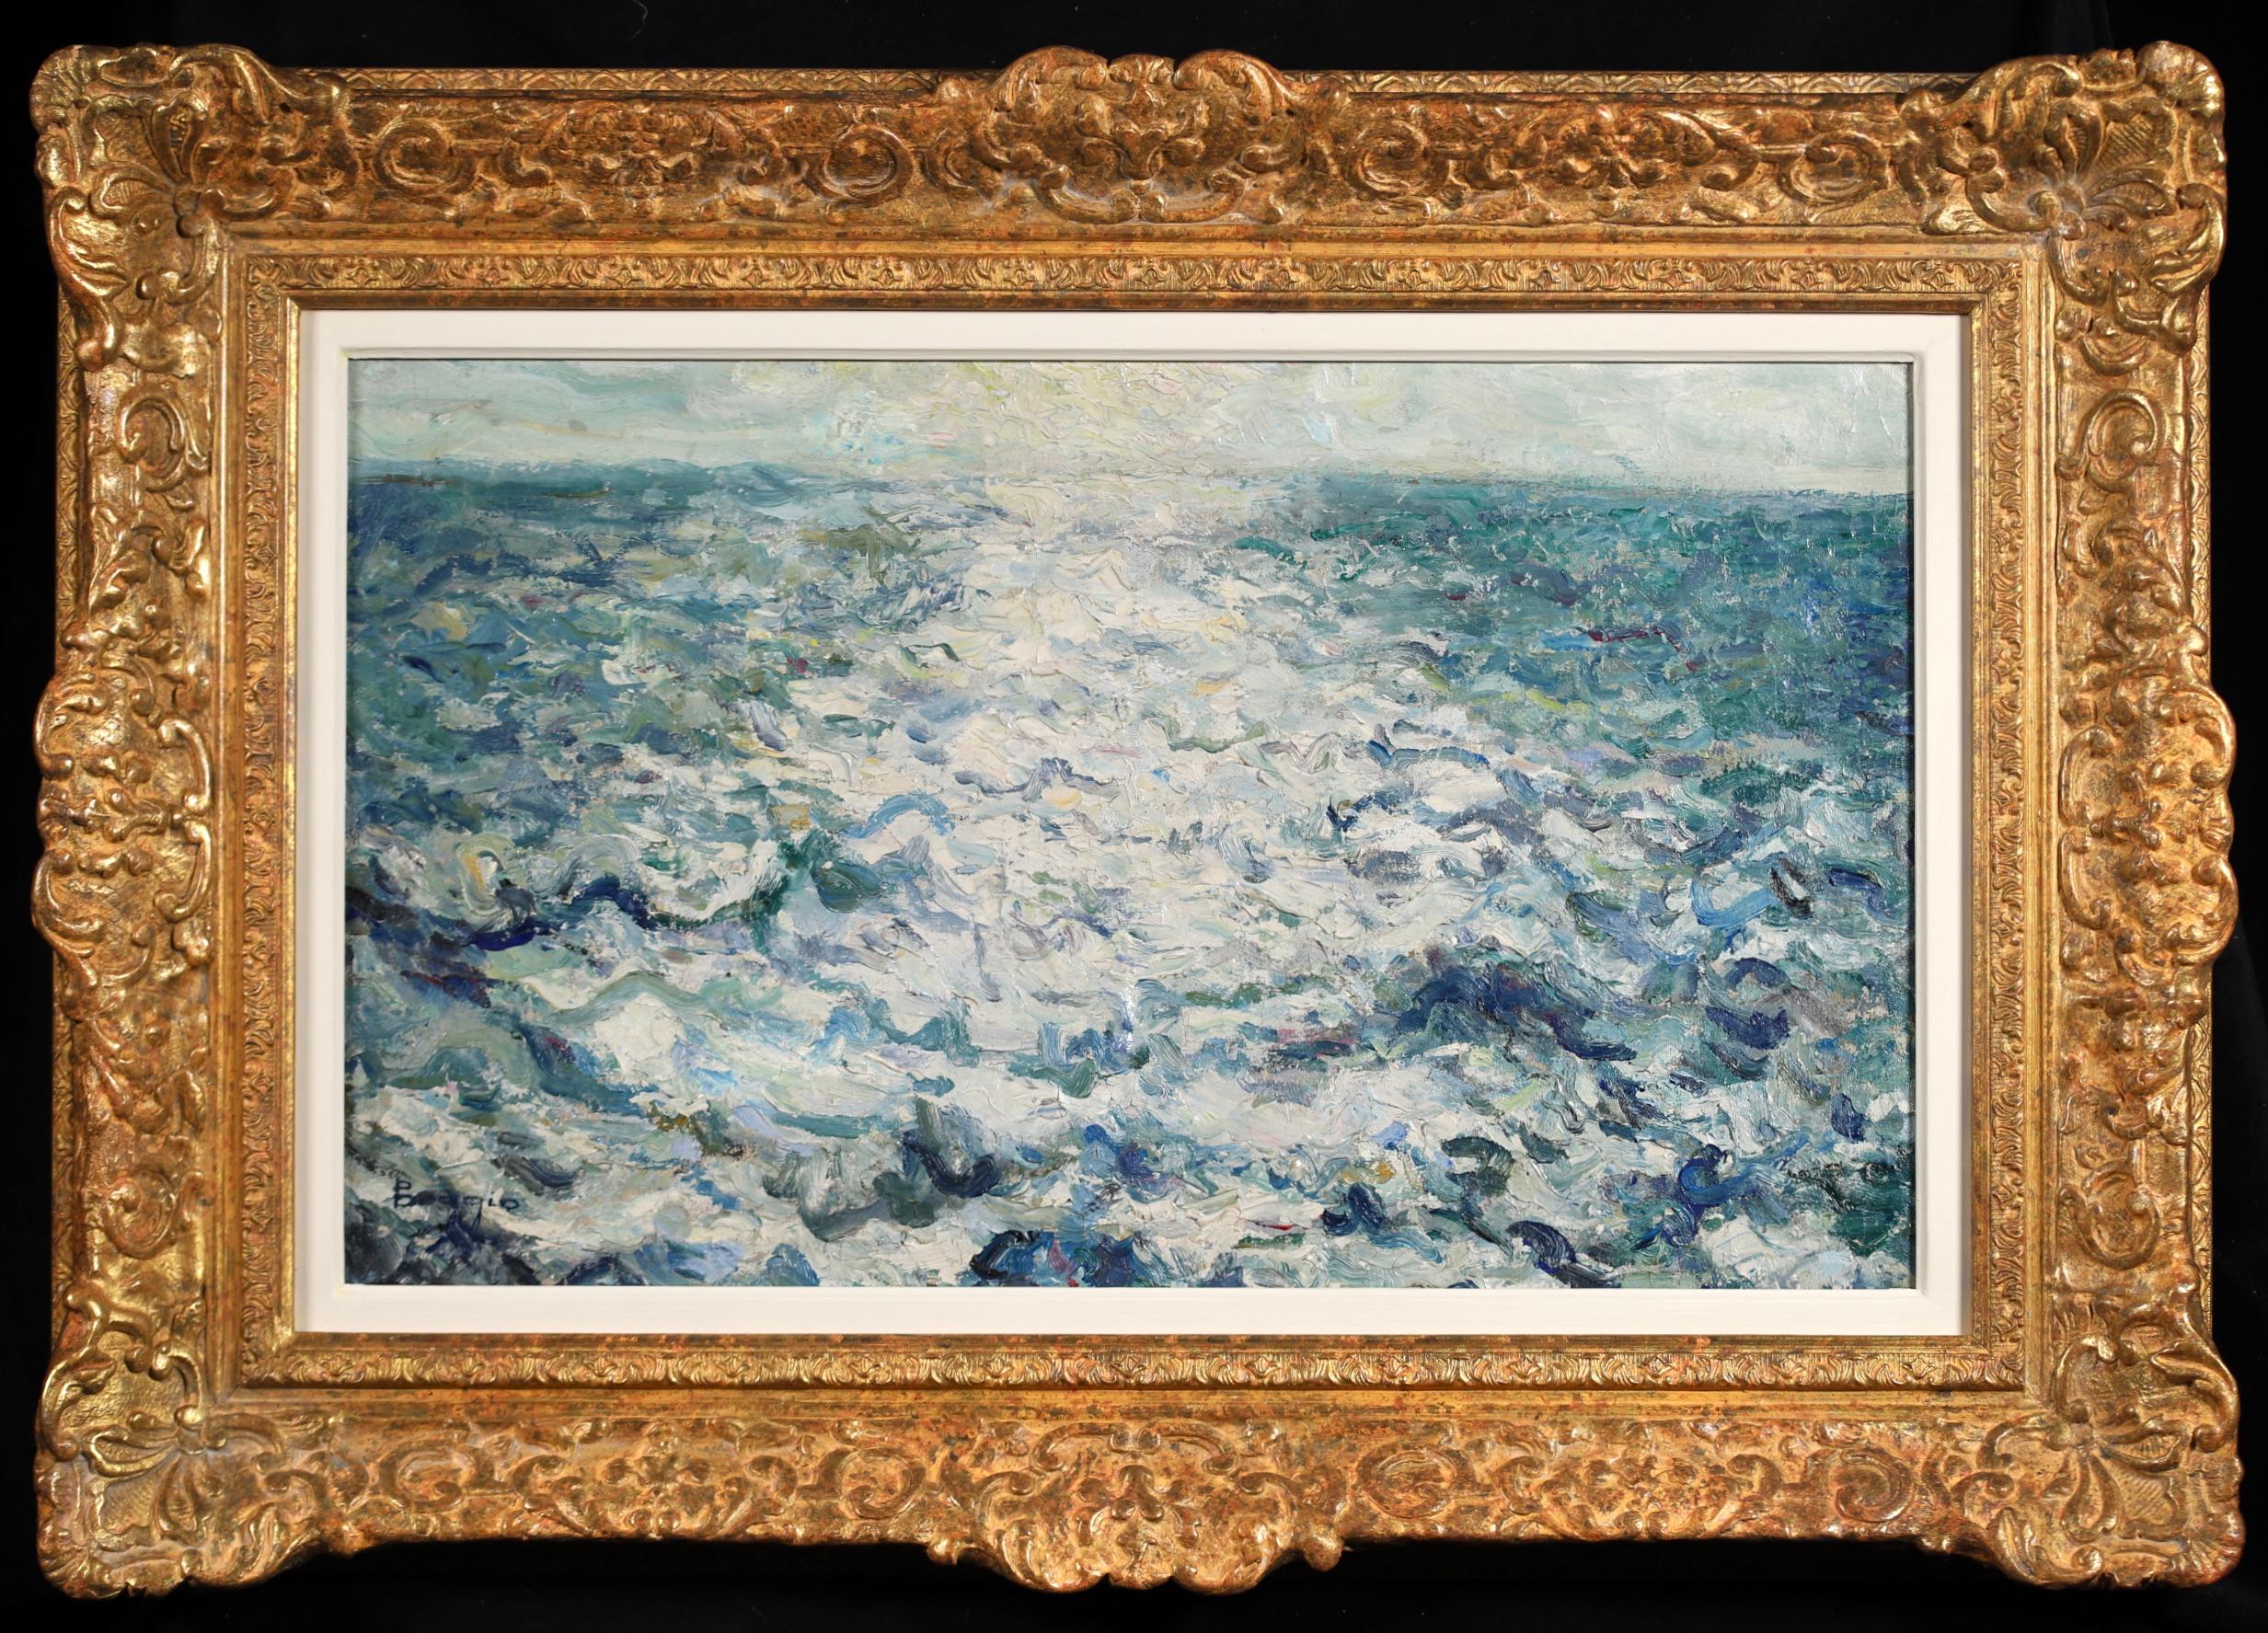 Voyage au Venezuela 1919 – Impressionistische Meereslandschaft, Ölgemälde von Emilio Boggio